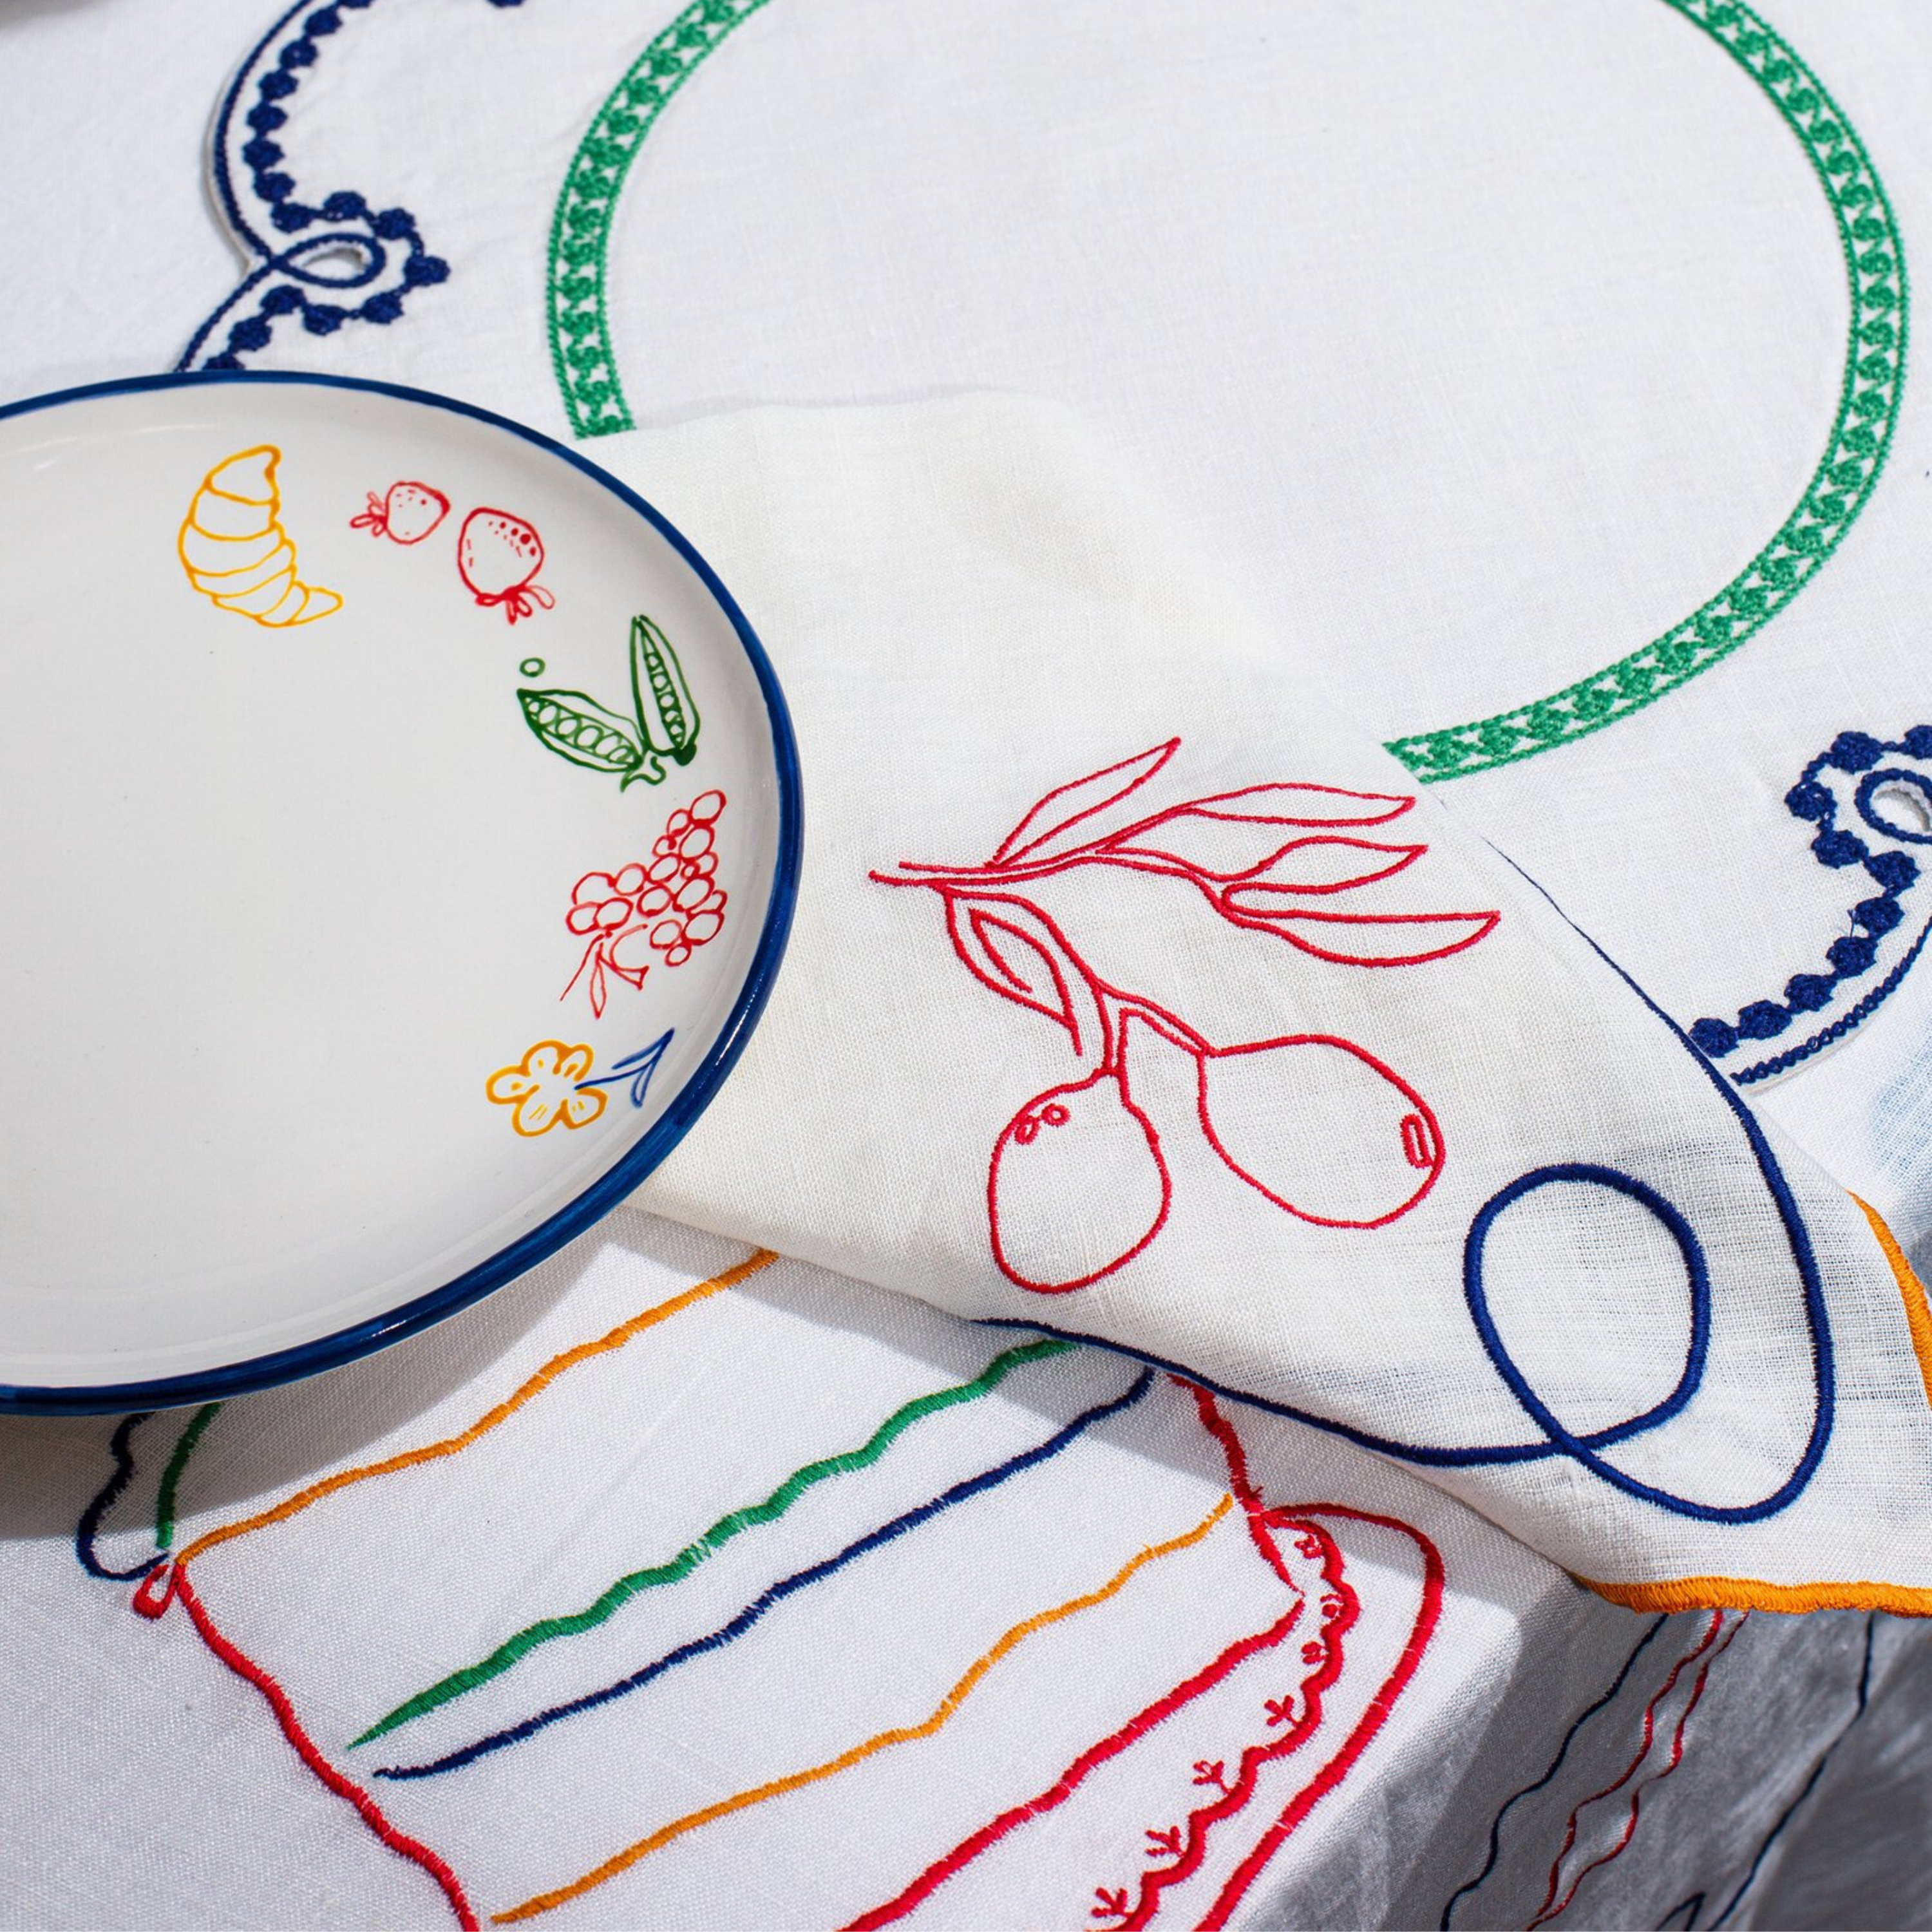 PREORDER - Hand Embroidered Linen Napkins - Set of 4 - Lavender